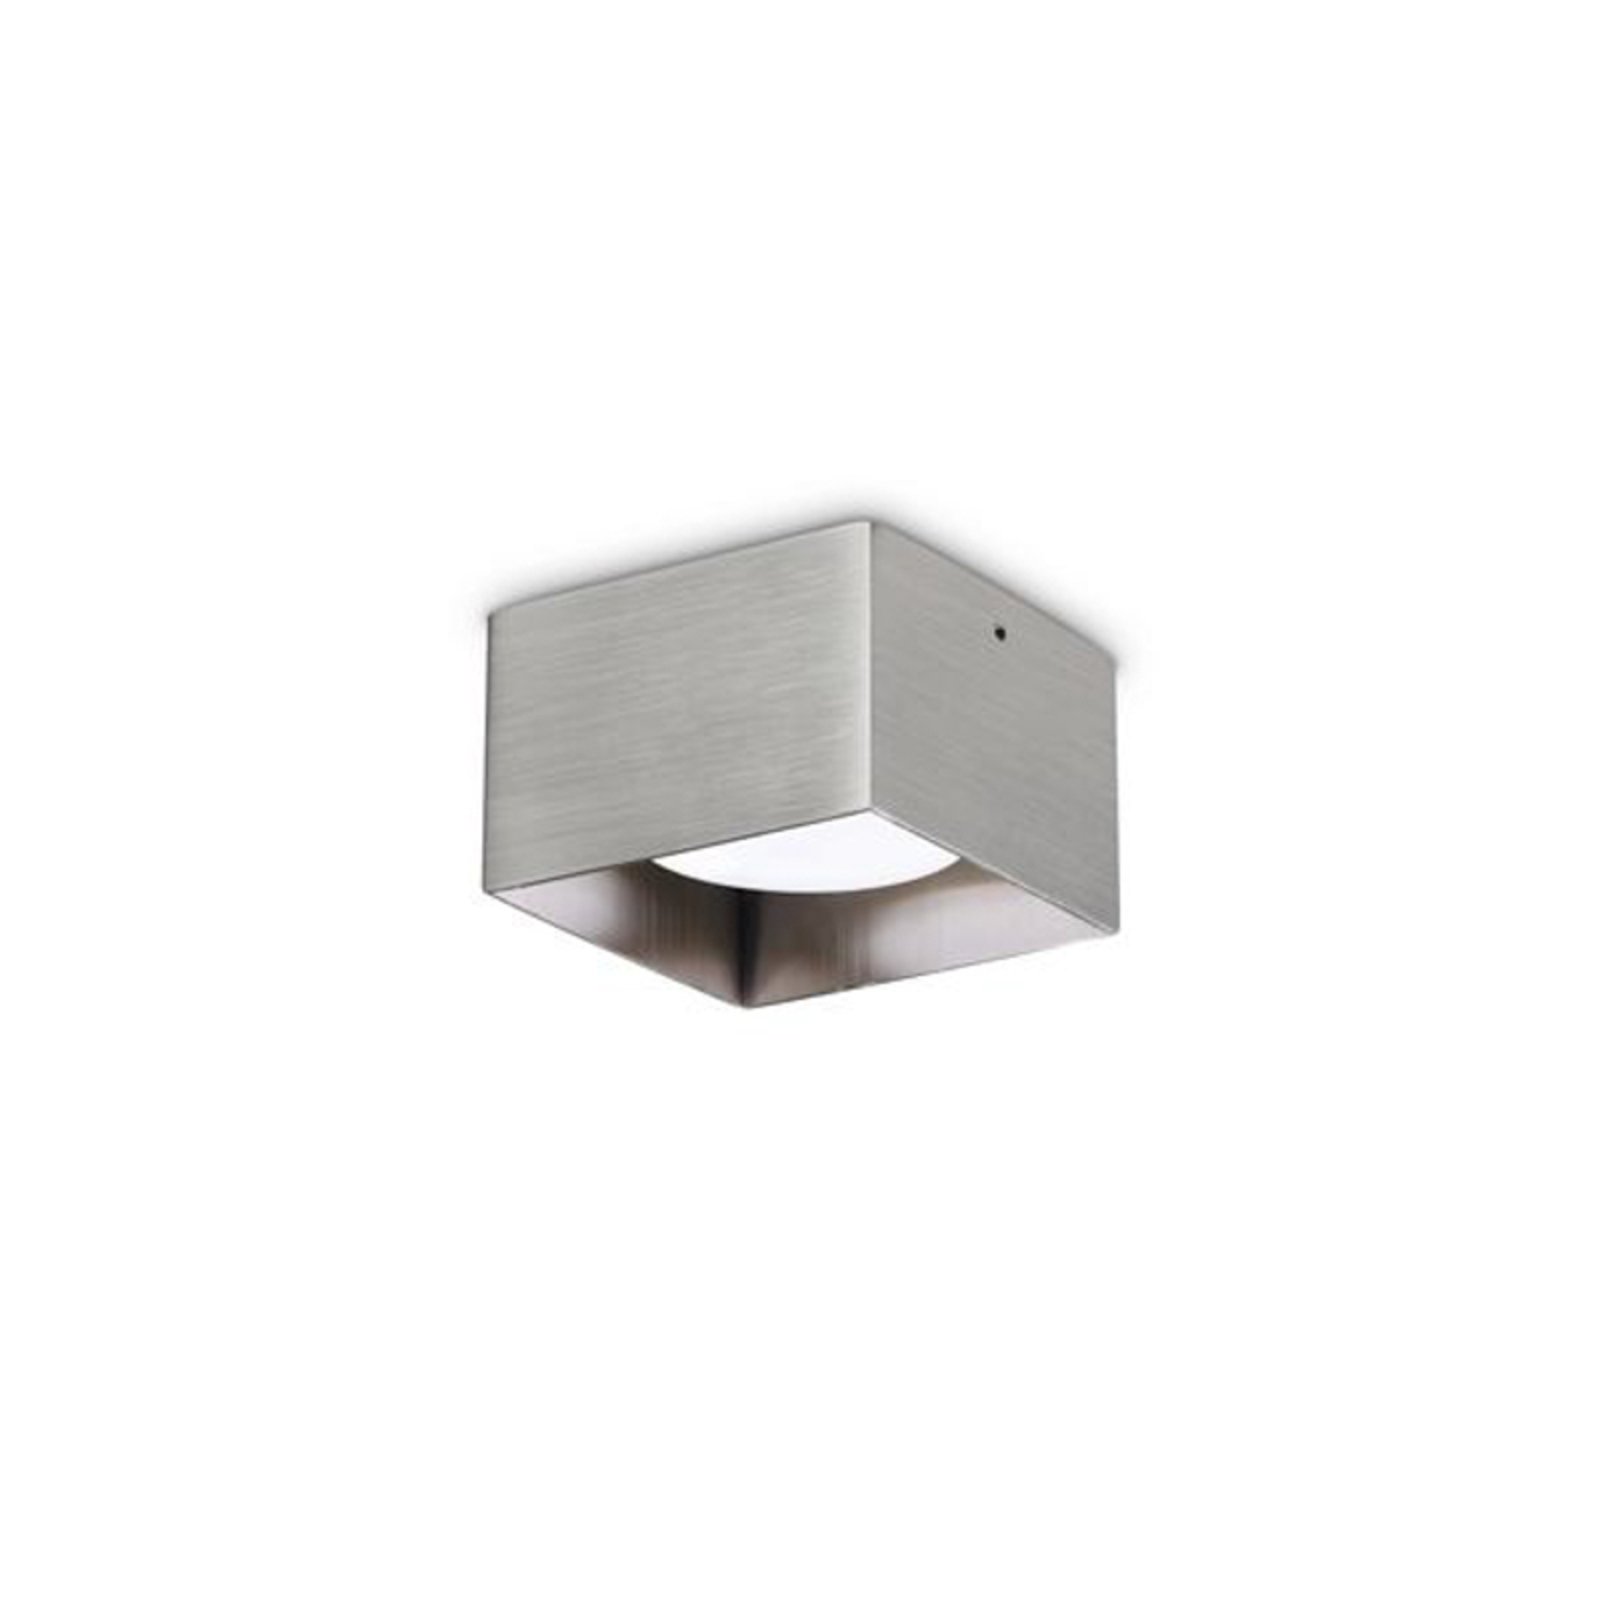 Ideal Lux ledlámpa Spike Square, nikkel színű, alumínium, 10x10cm